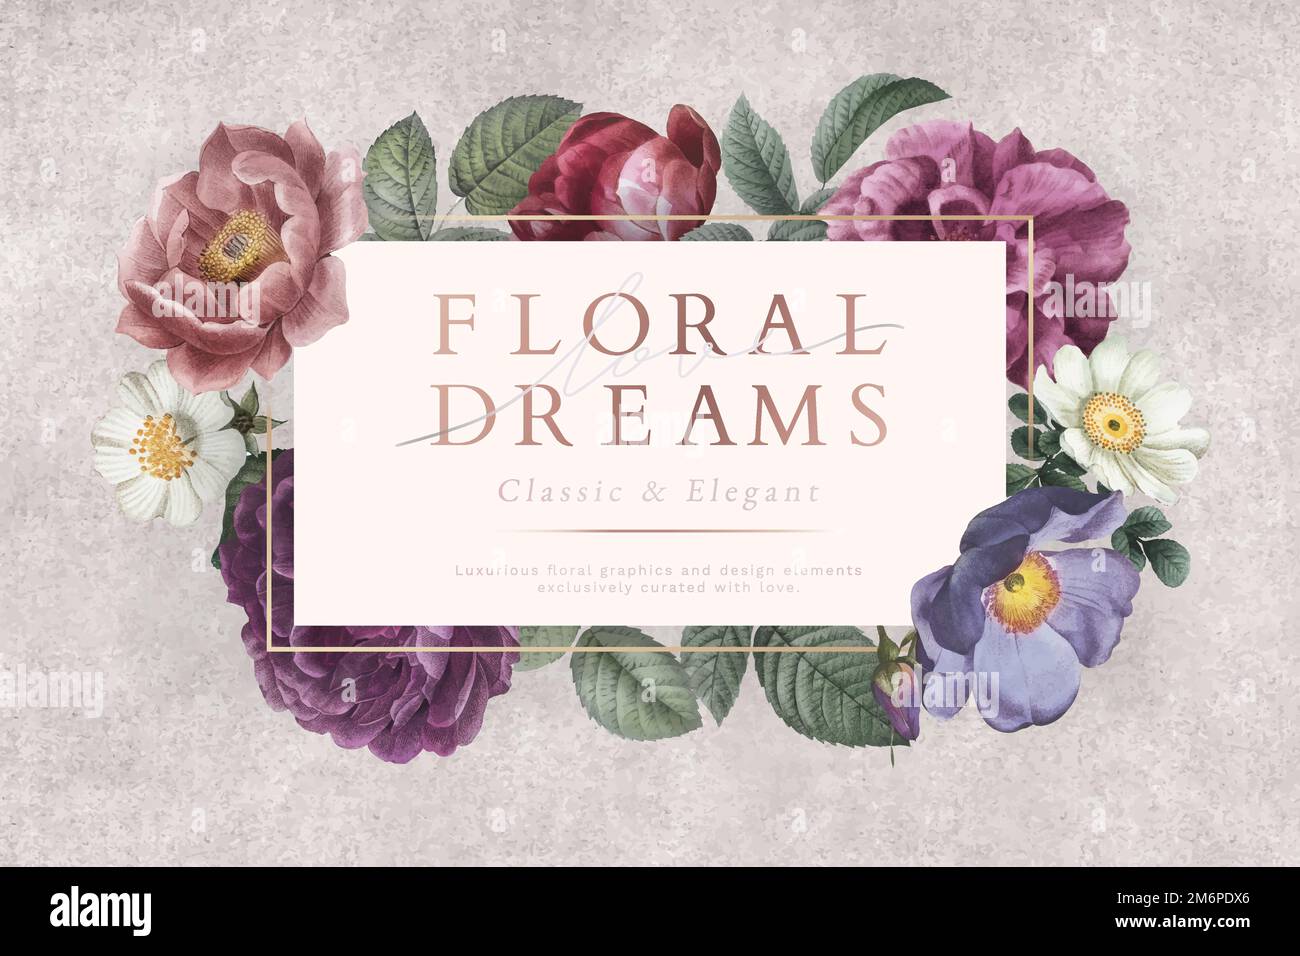 Floral dreams banner on a gray concrete wall vector Stock Vector